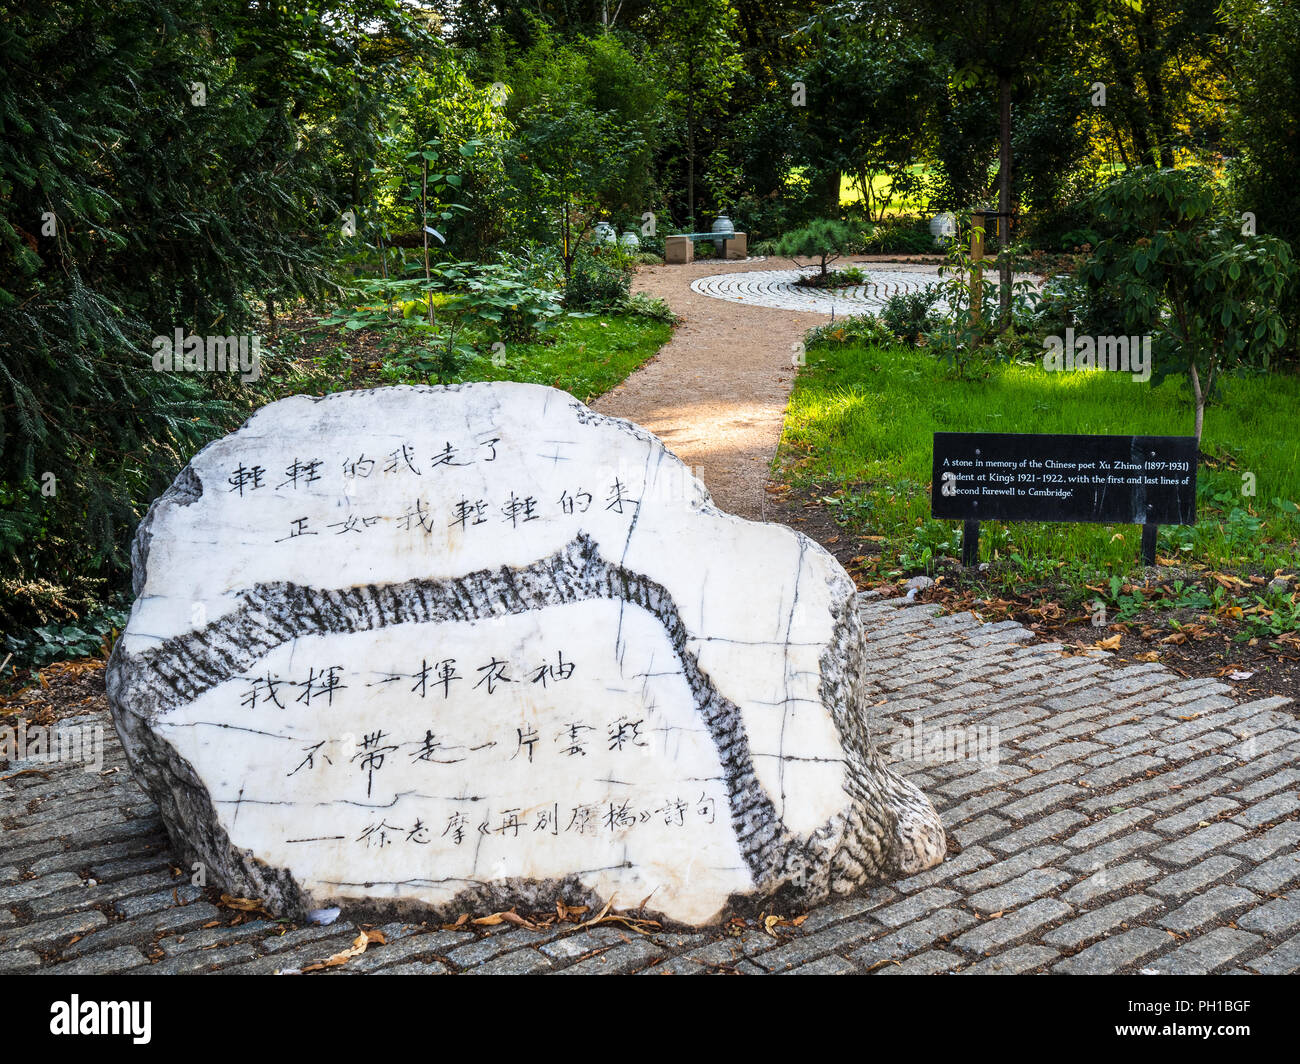 Xu Zhimo Memorial - monumento alla prima e ultima riga del poema Addio a Cambridge nei giardini del Kings College, Cambridge University. Foto Stock